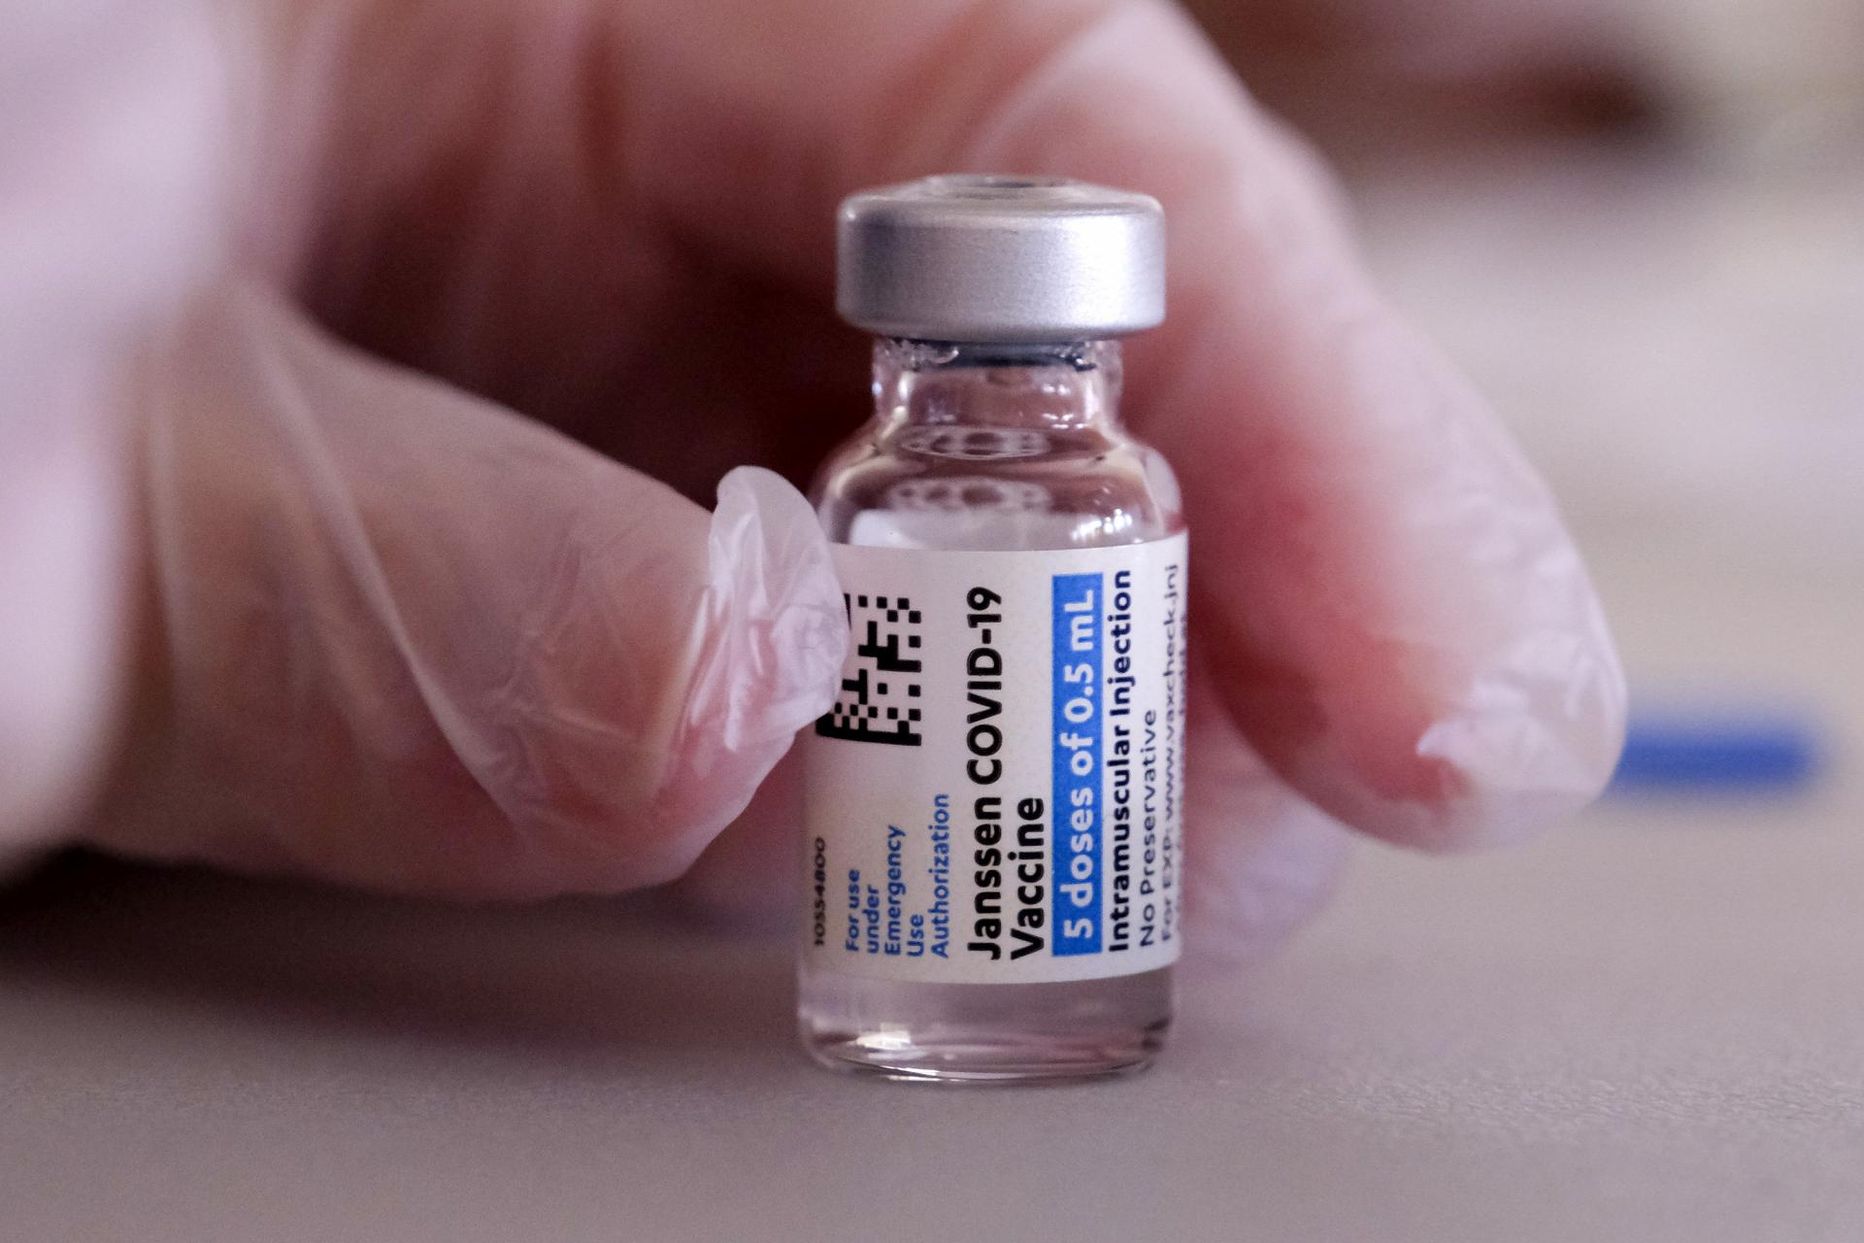 Euroopa Komisjon andis COVID-19 Vaccine Janssenile tingimustega müügiloa tänavu 11. märtsil.